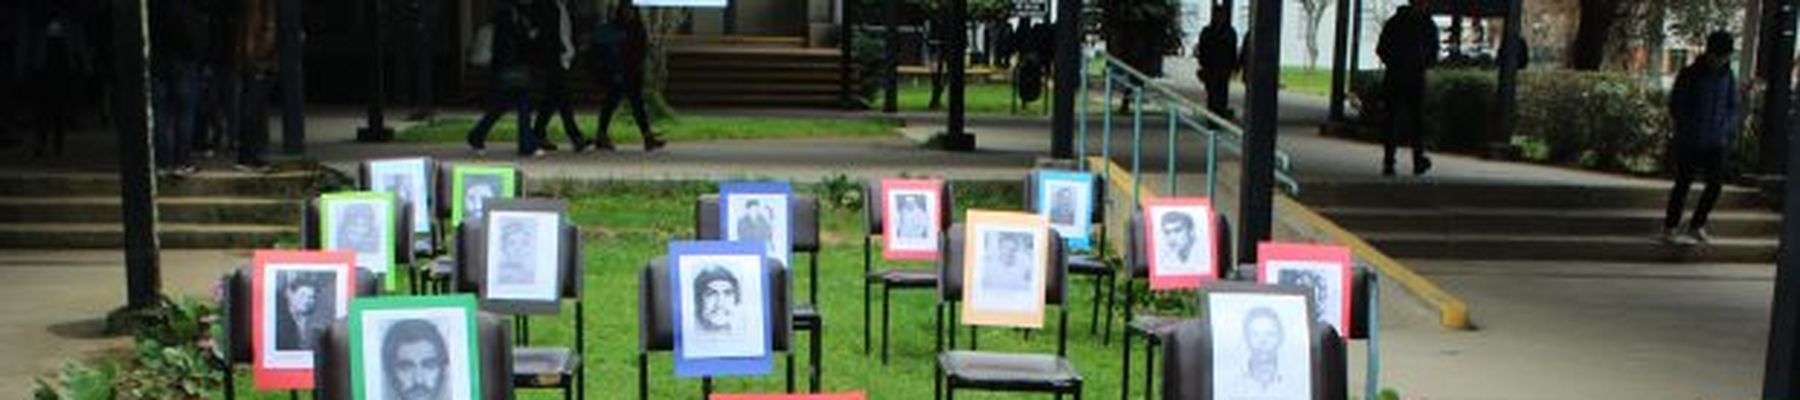 UdeC 100 años: Conoce la lista de estudiantes y egresados/as de la Universidad de Concepción caídos en dictadura